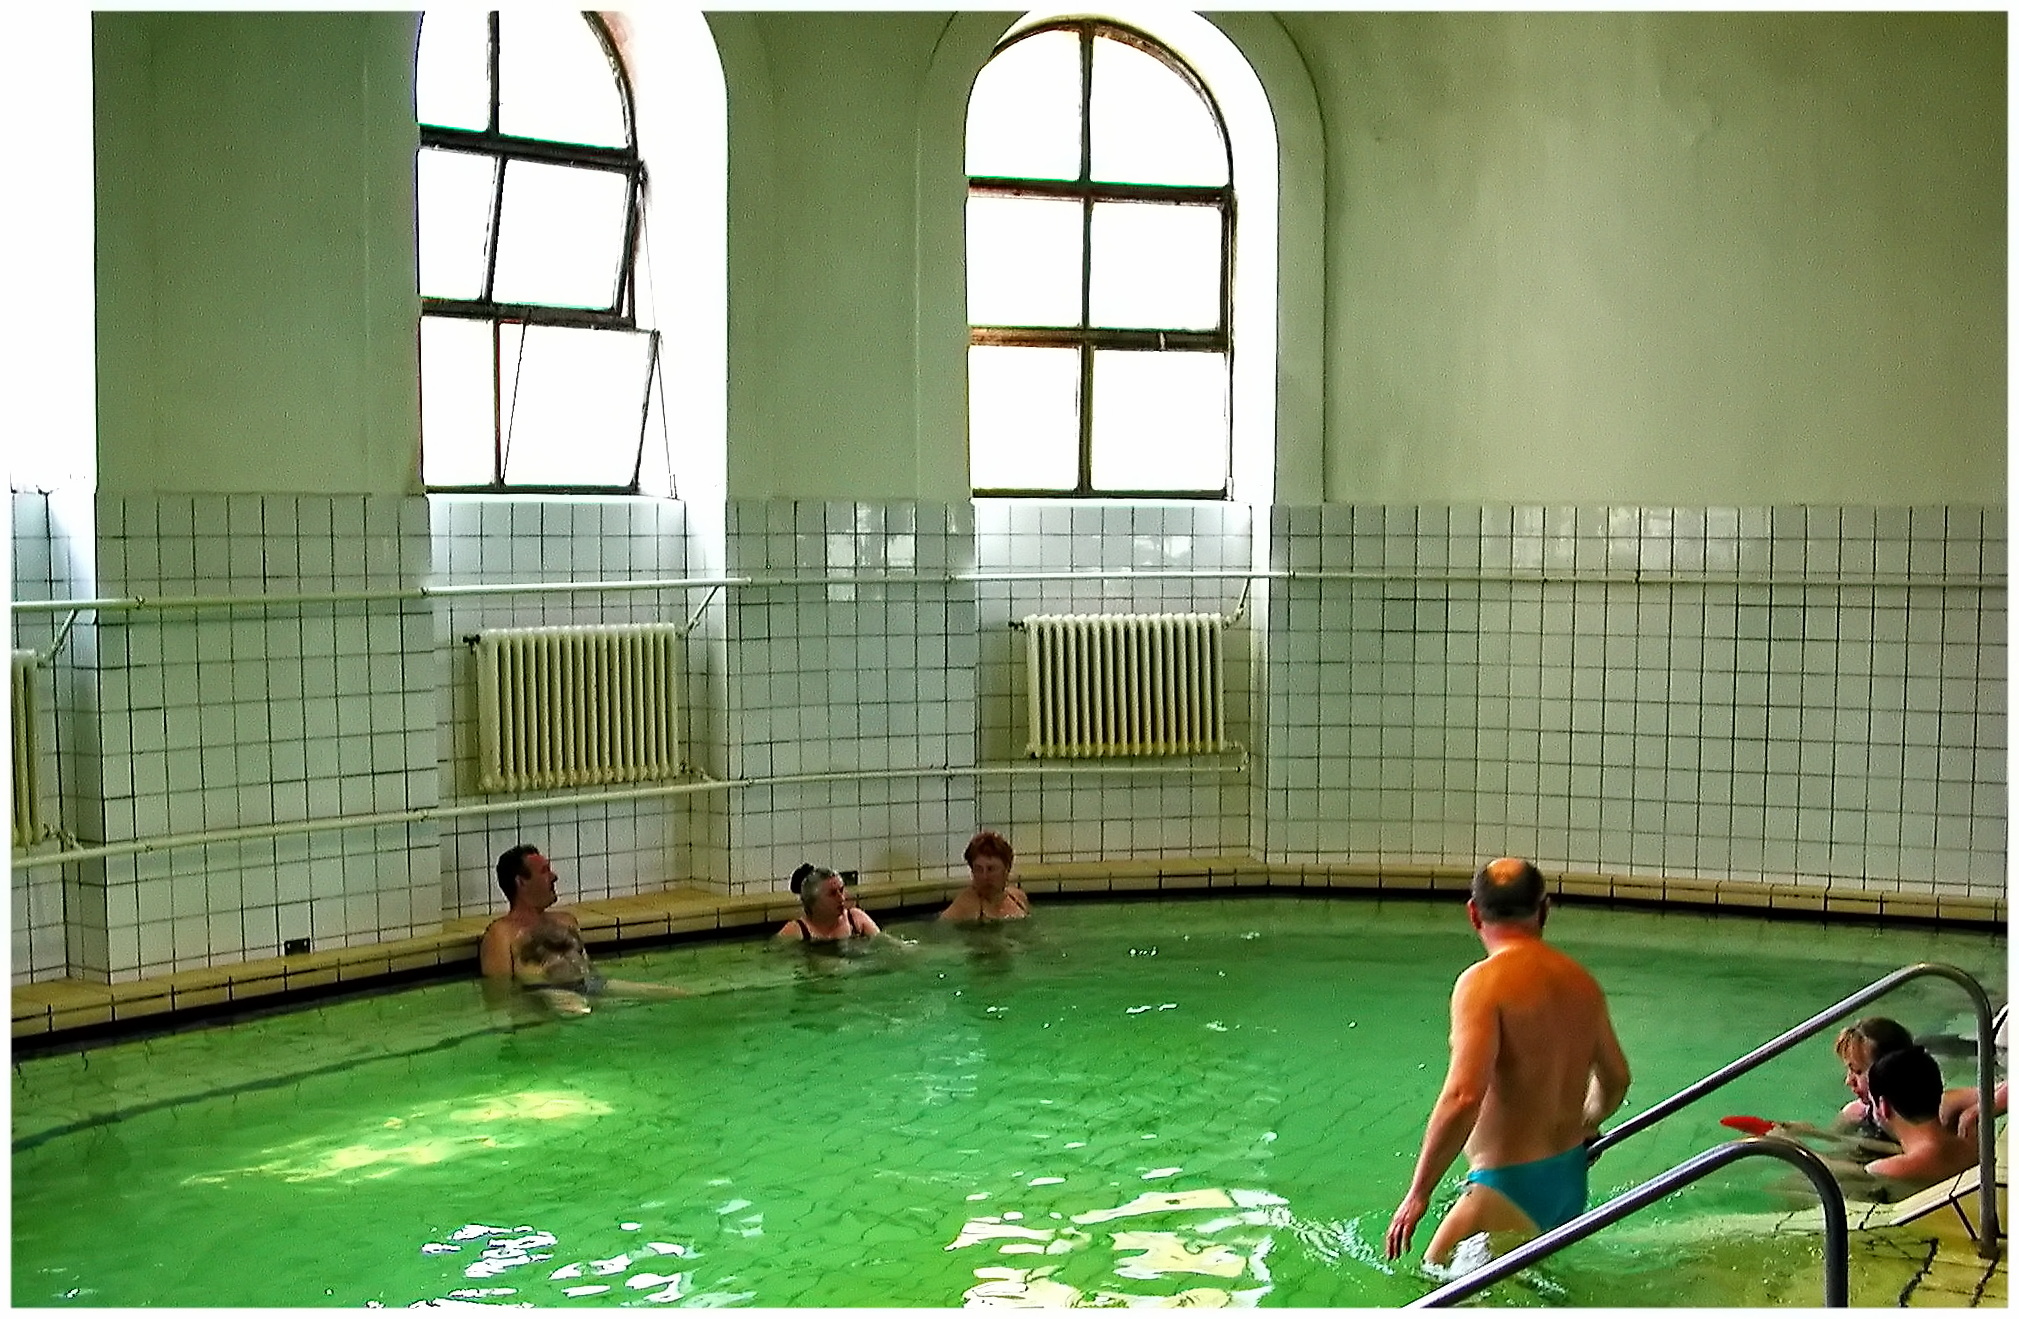 Széchenyi Outdor Bath